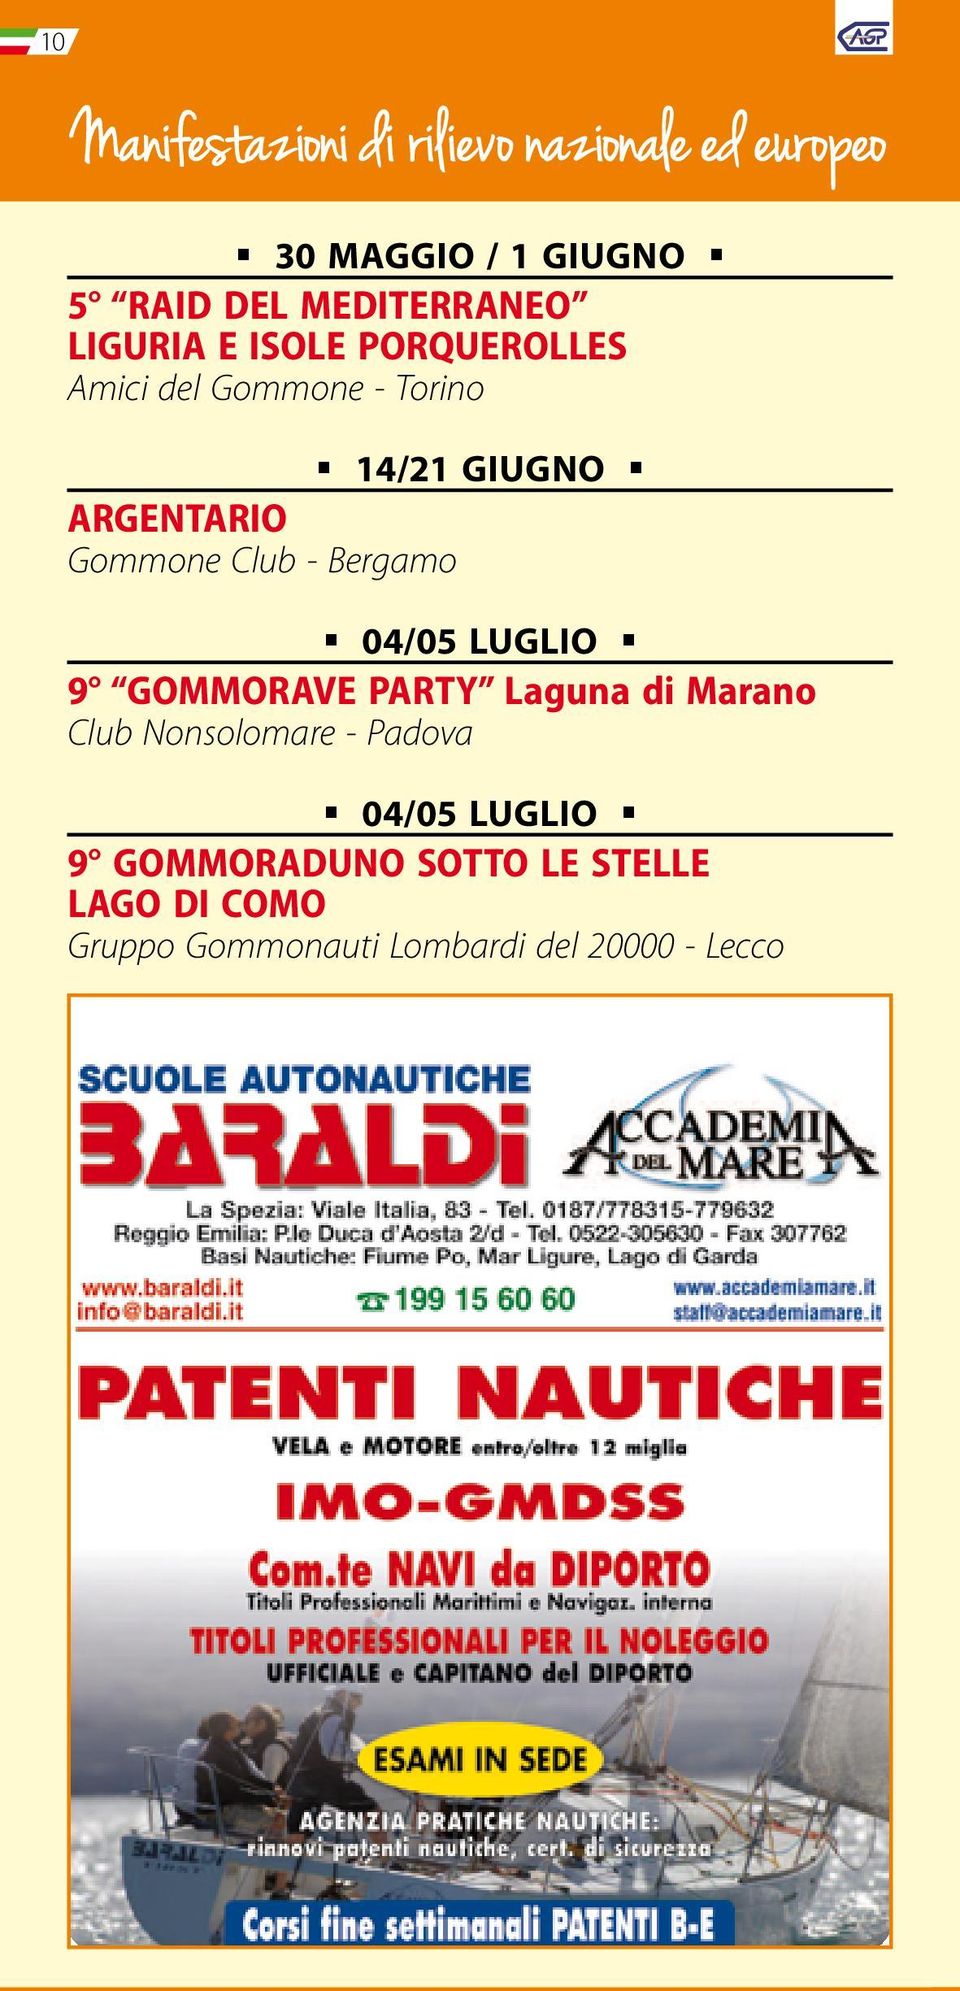 Gommone Club - Bergamo 04/05 LUGLIO 9 GOMMORAVE PARTY Laguna di Marano Club Nonsolomare -